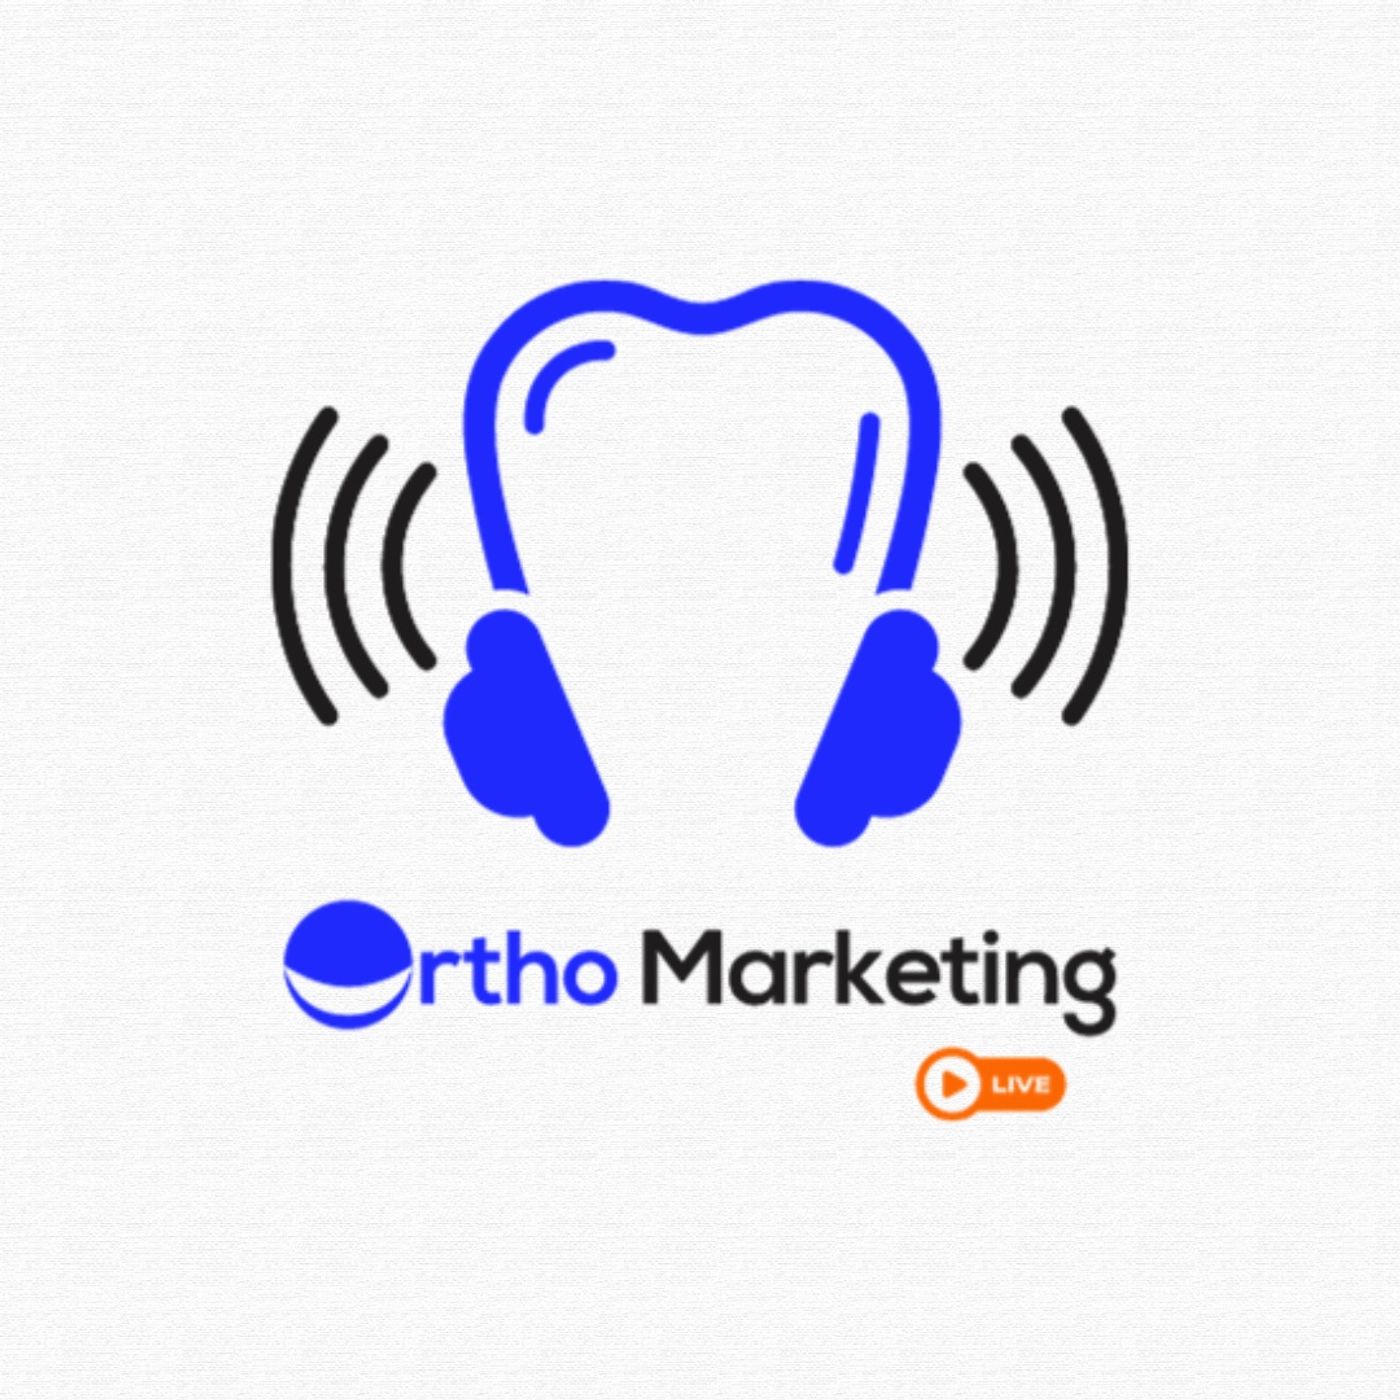 Ortho Marketing Live